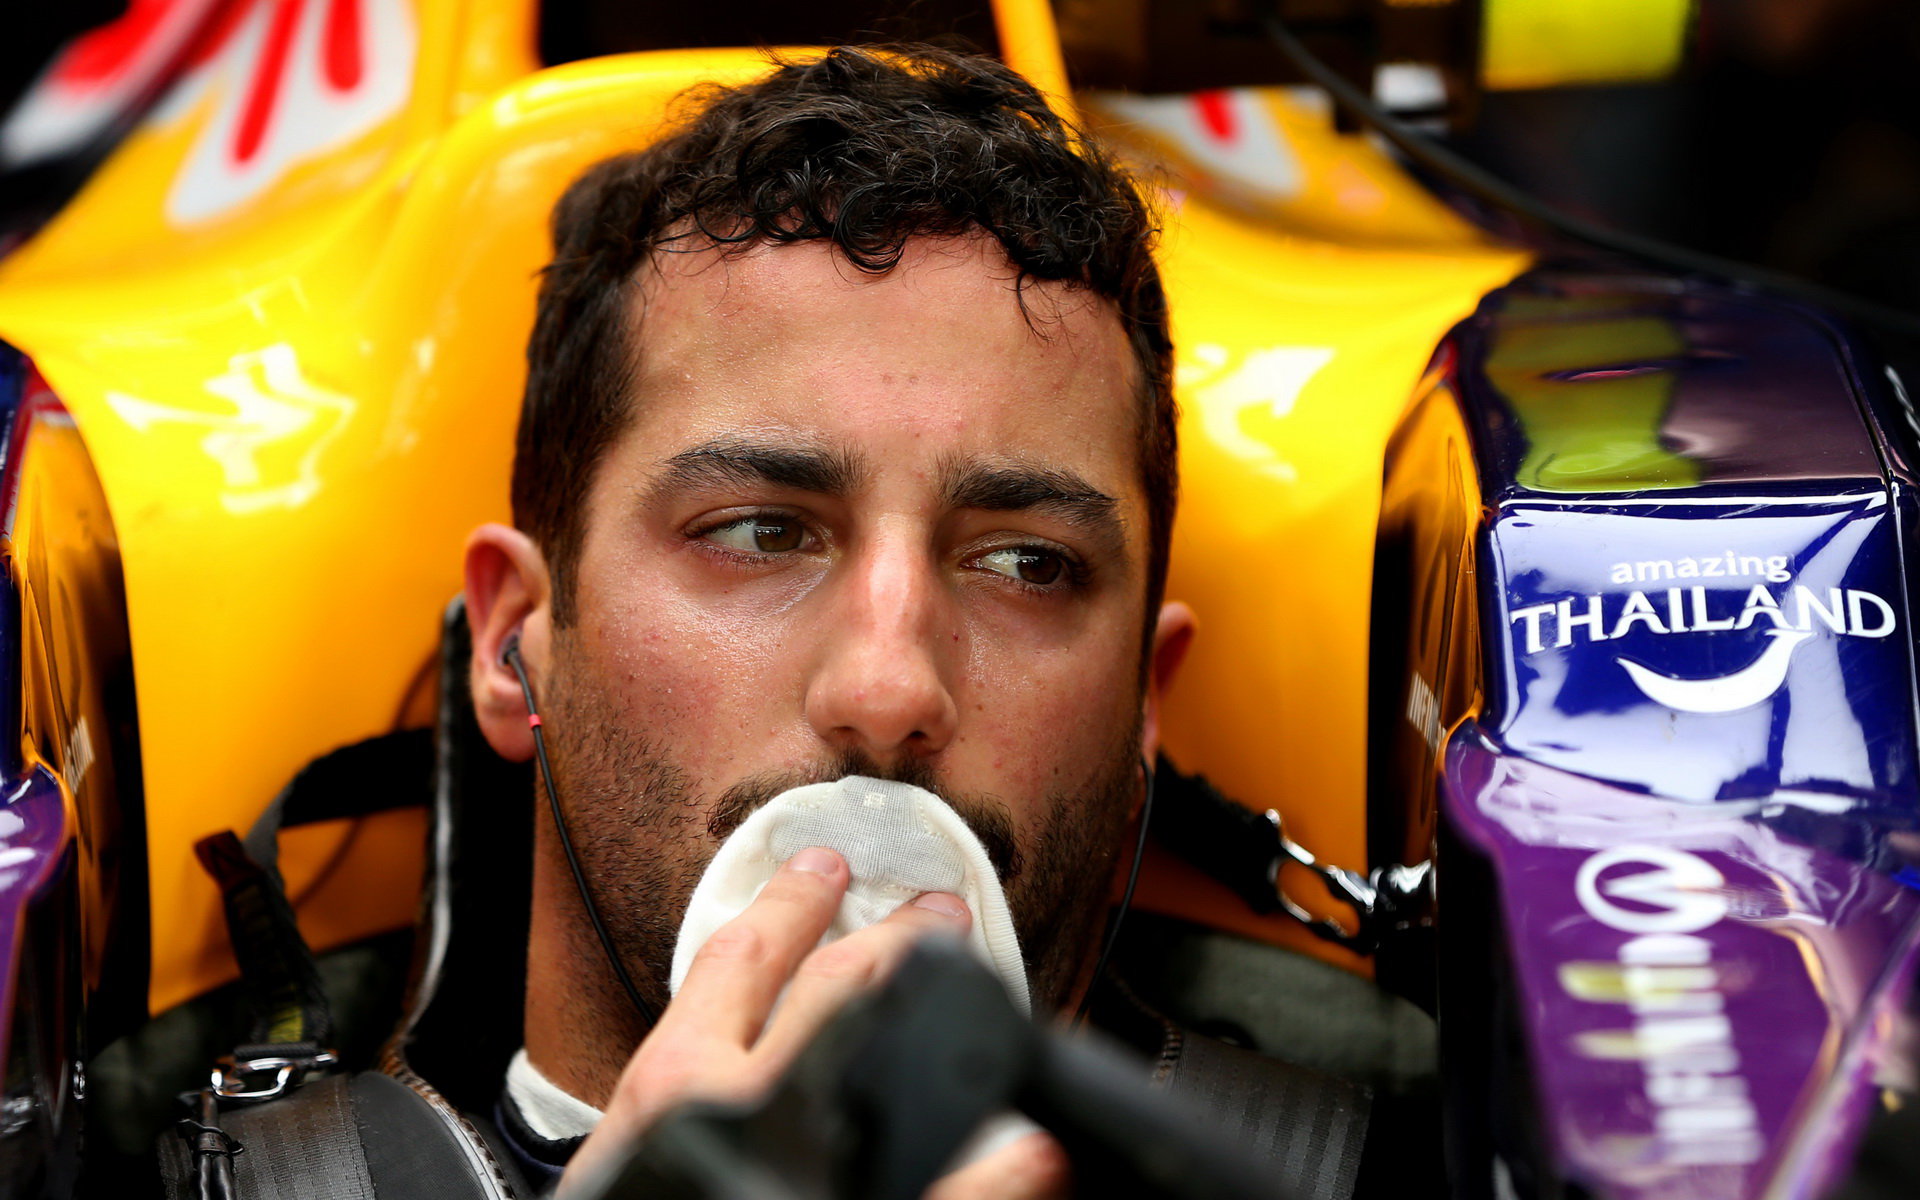 Daniel Ricciardo vnímá letošní rok jako pokles v cestě do absolutní špičky